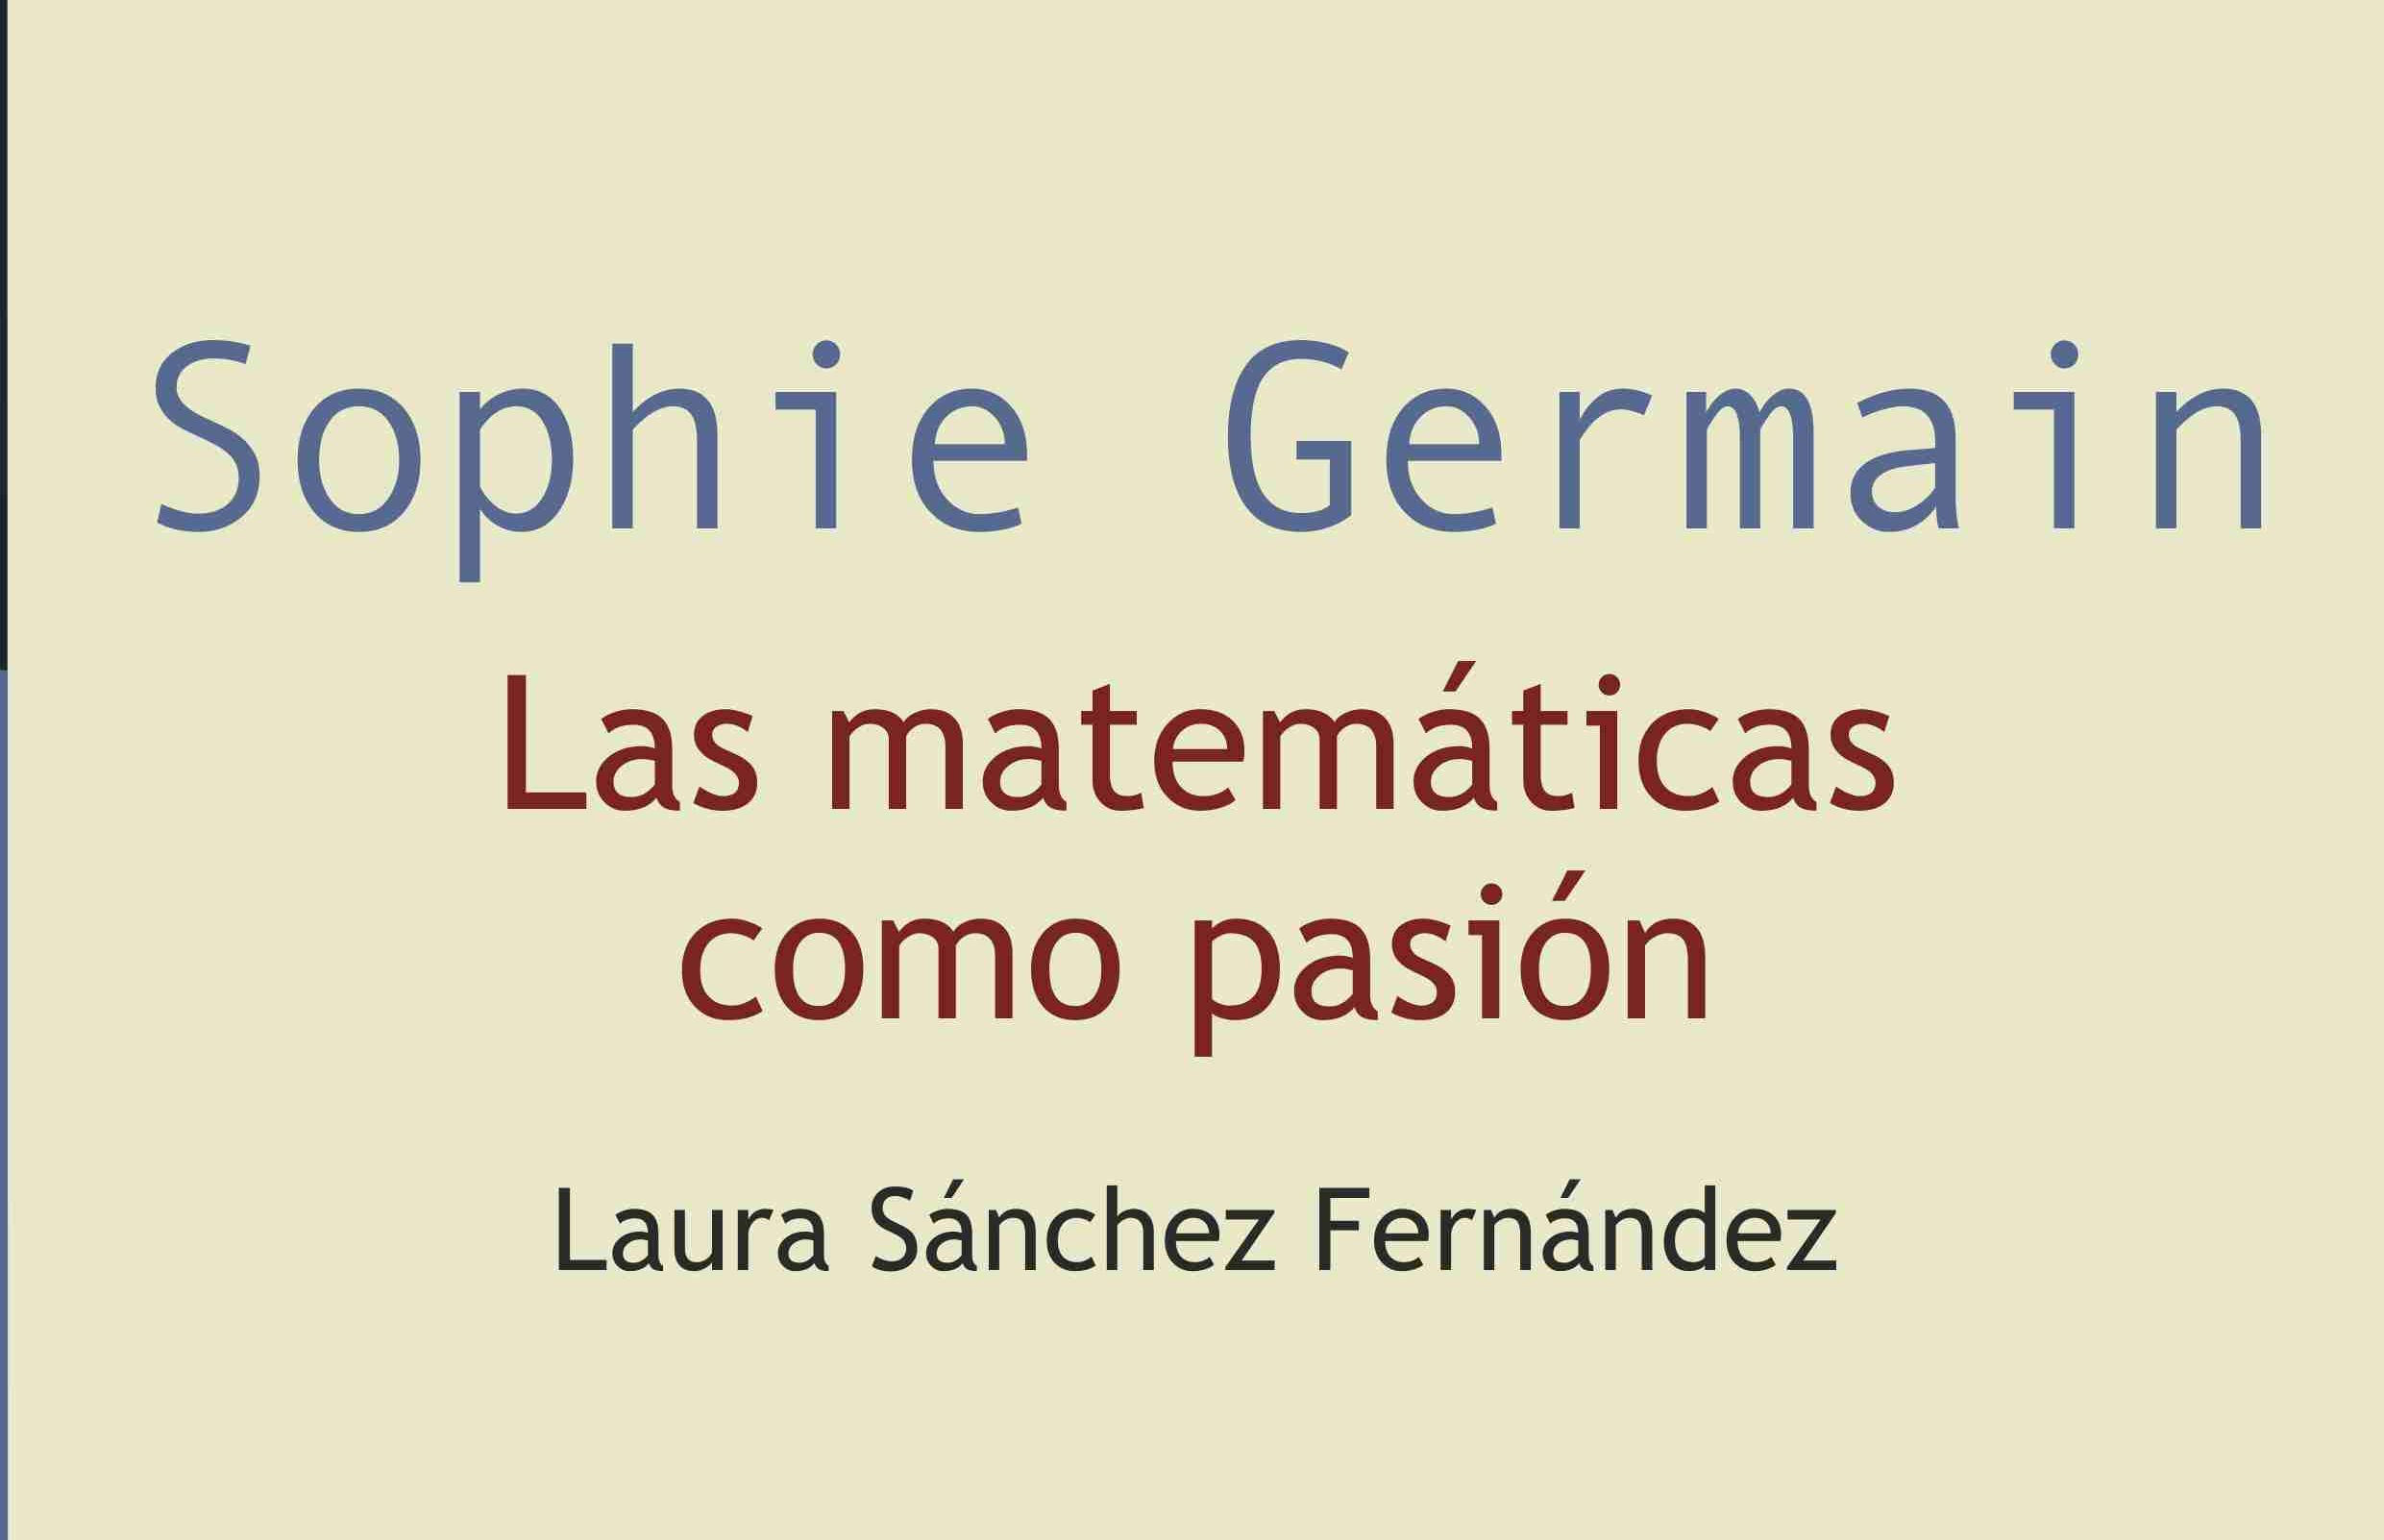 Sophie Germain. Las matemáticas como pasión